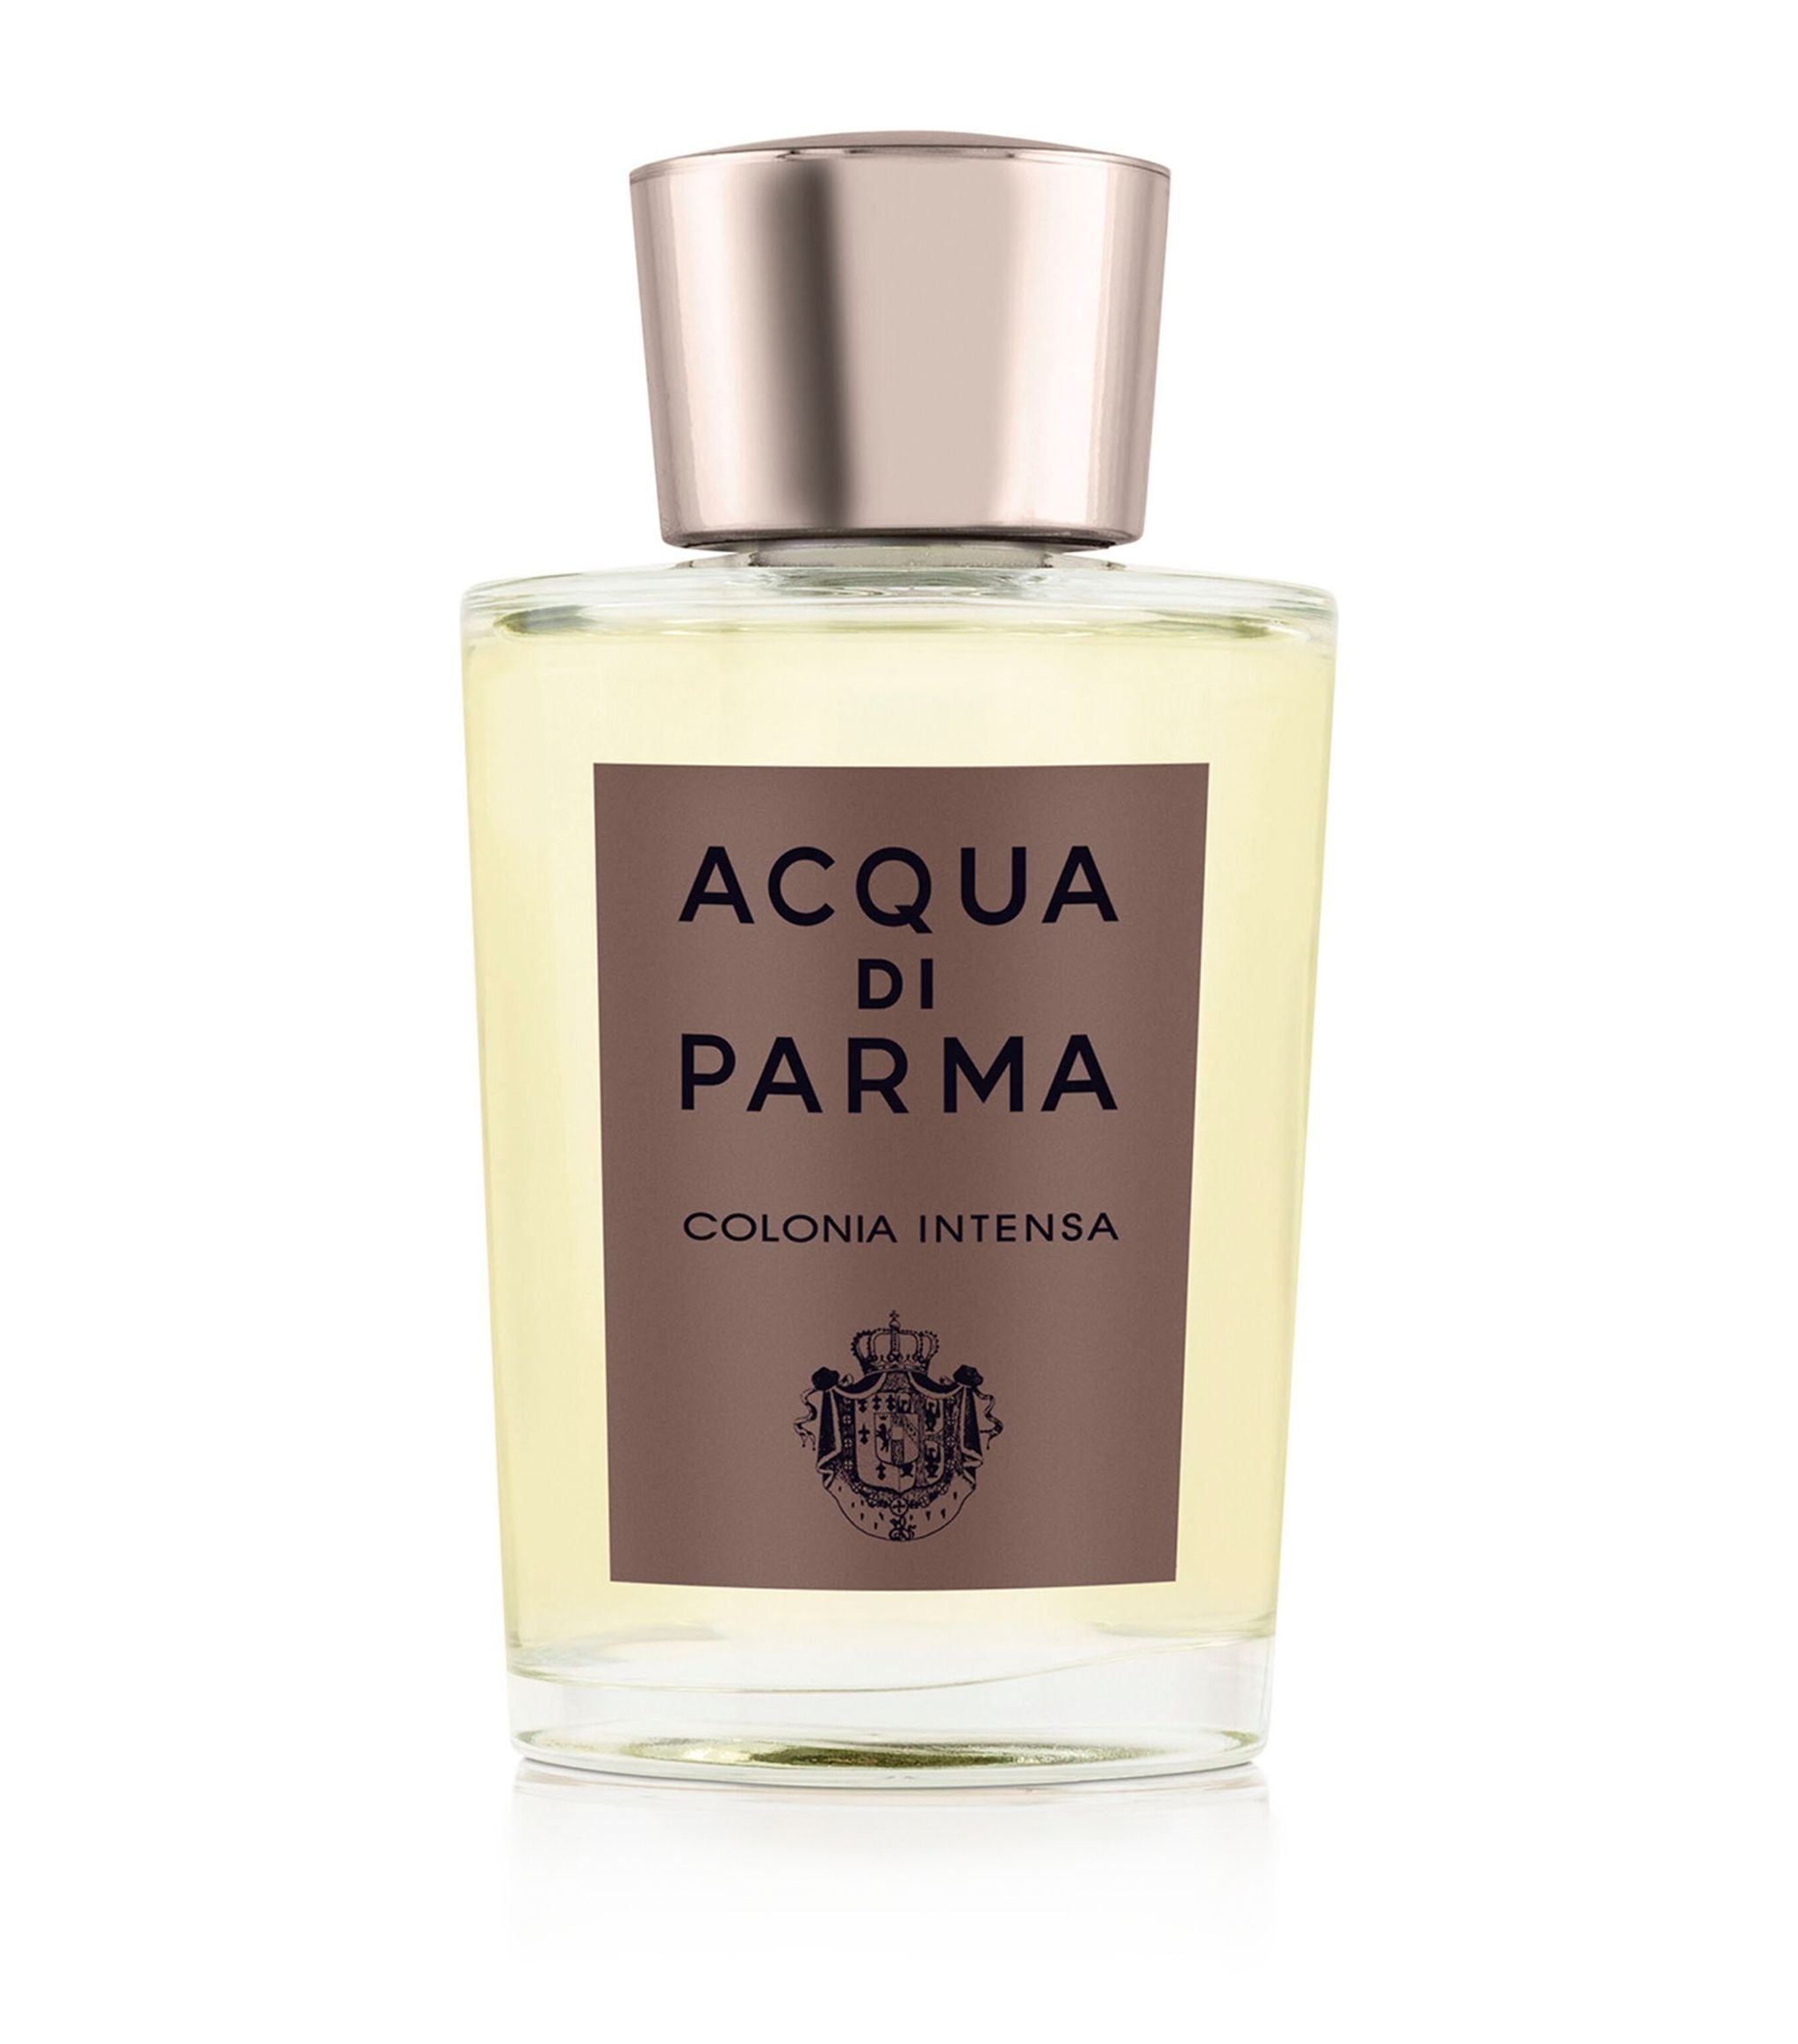 Colonia Intensa Cologne by Acqua Di Parma Fragrance Samples, DecantX